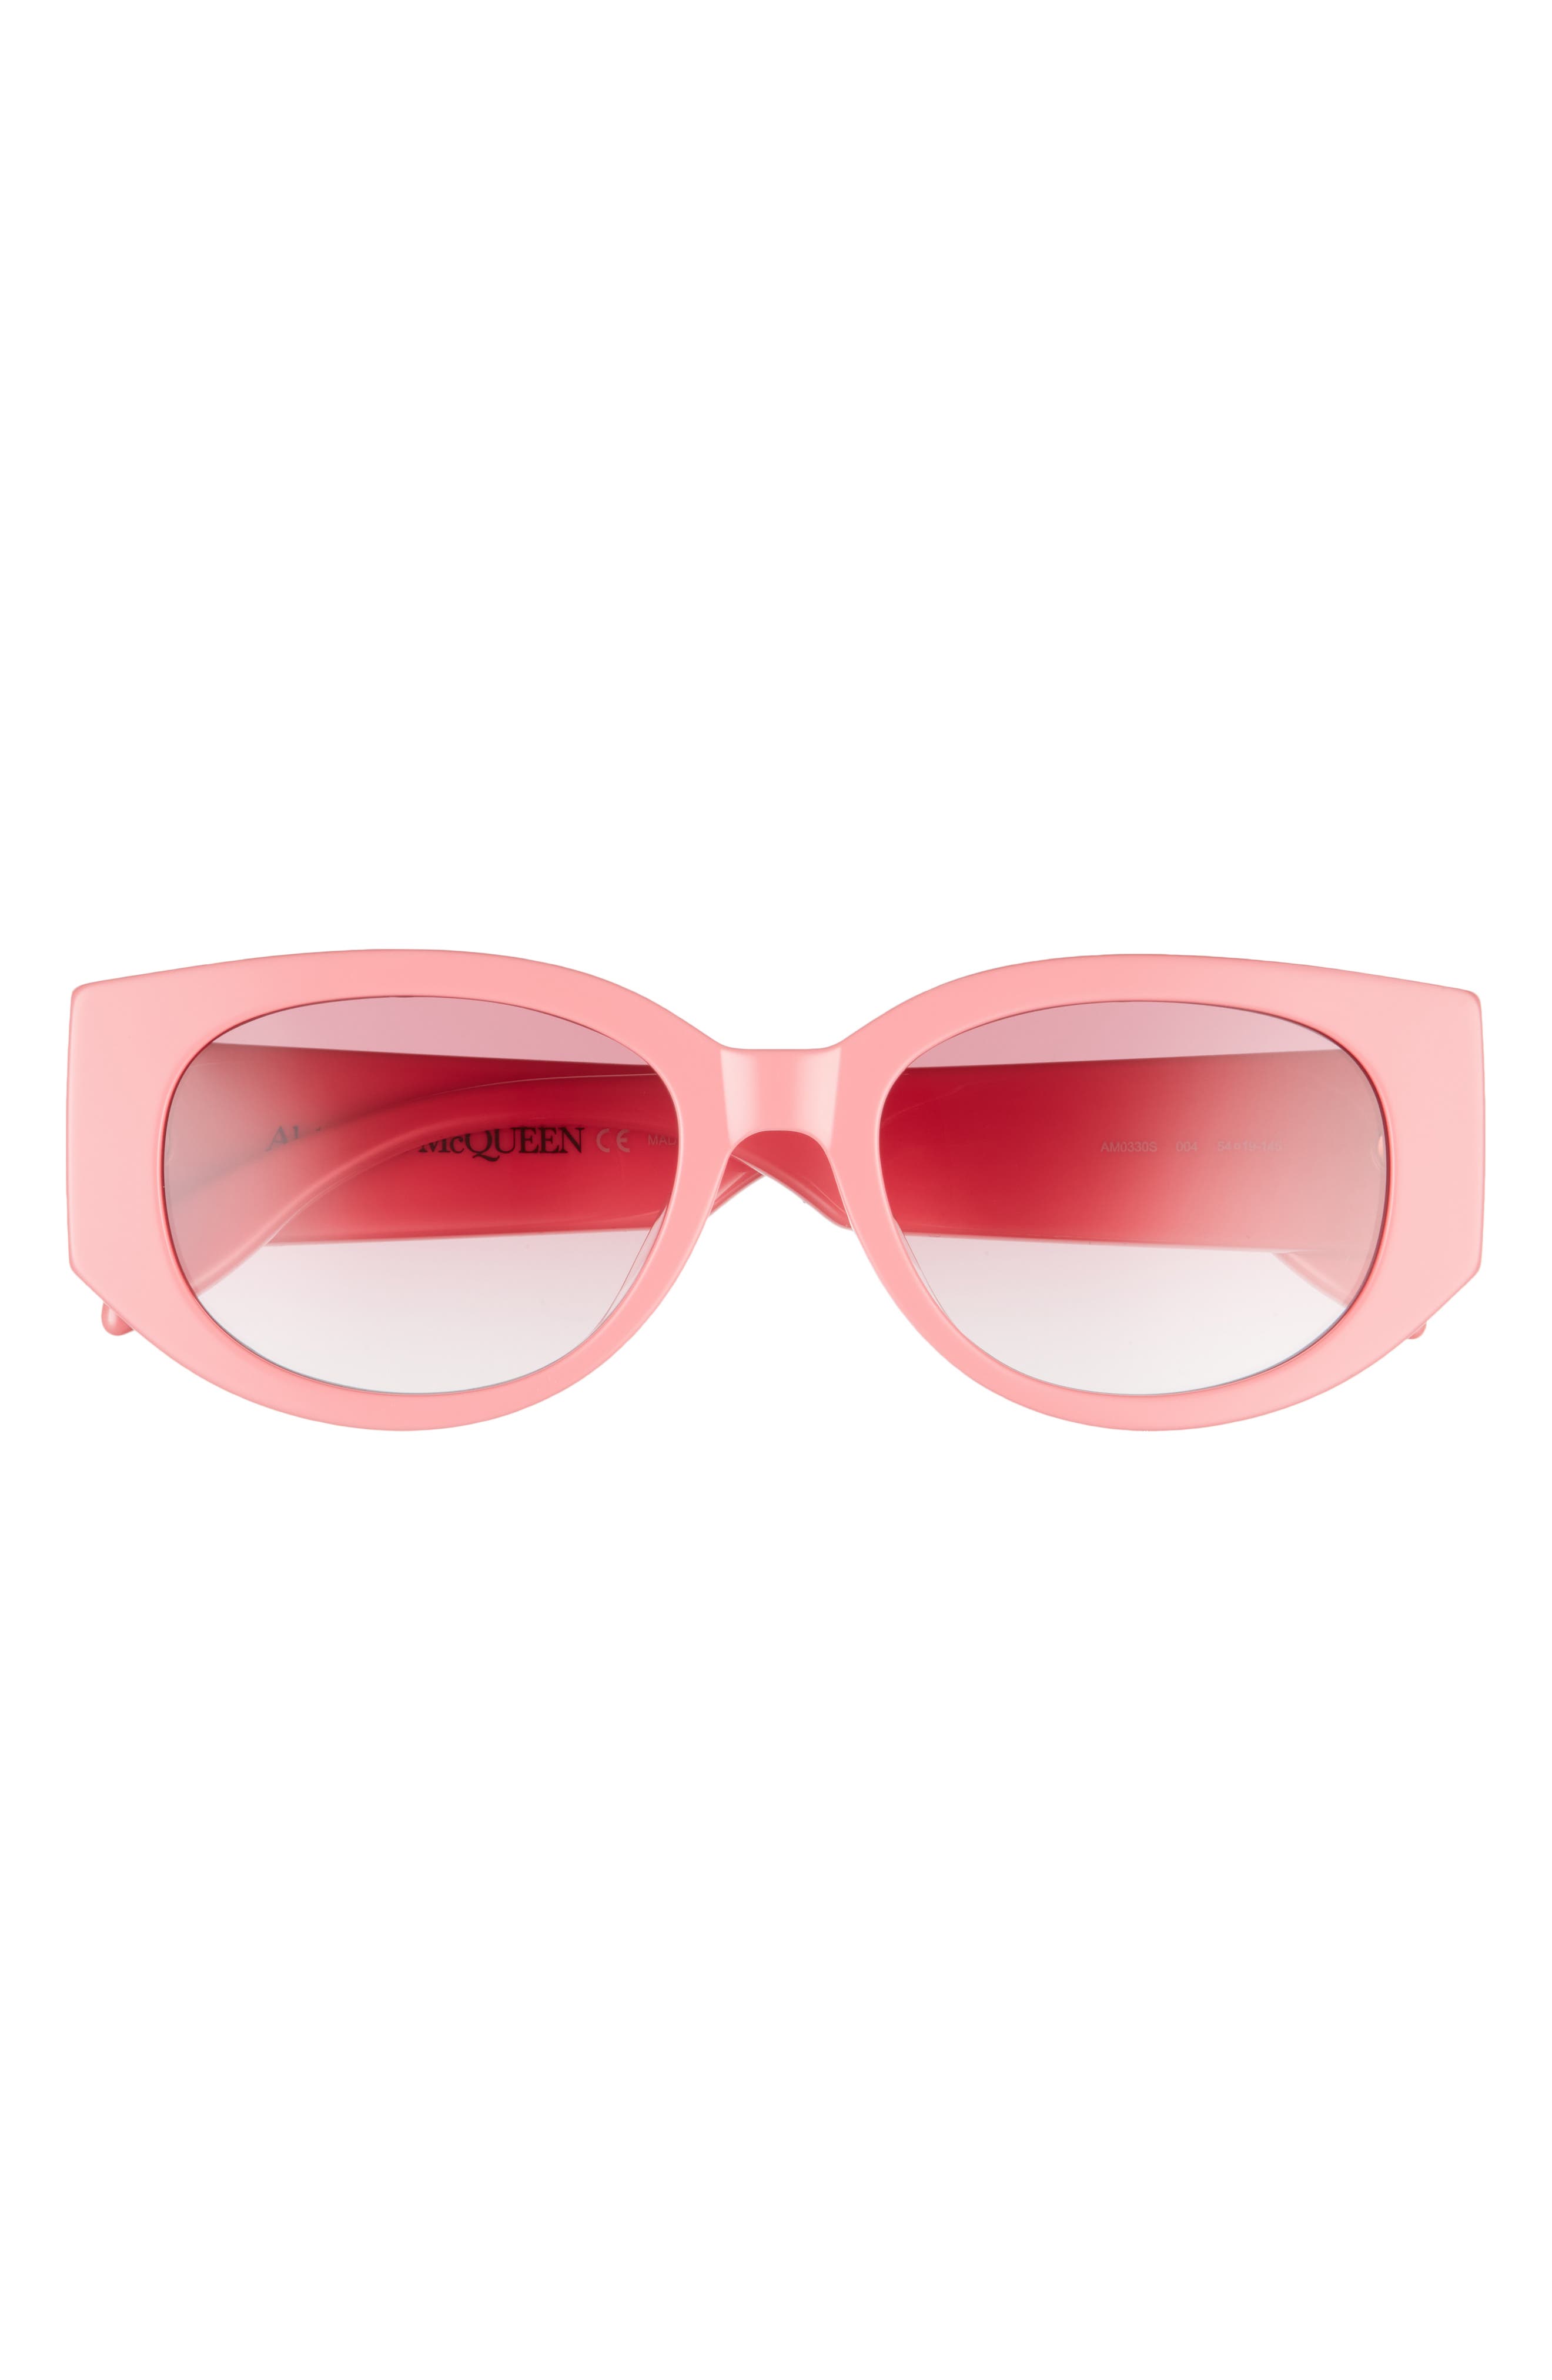 Alexander McQueen 54mm Rectangular Sunglasses in Pink at Nordstrom